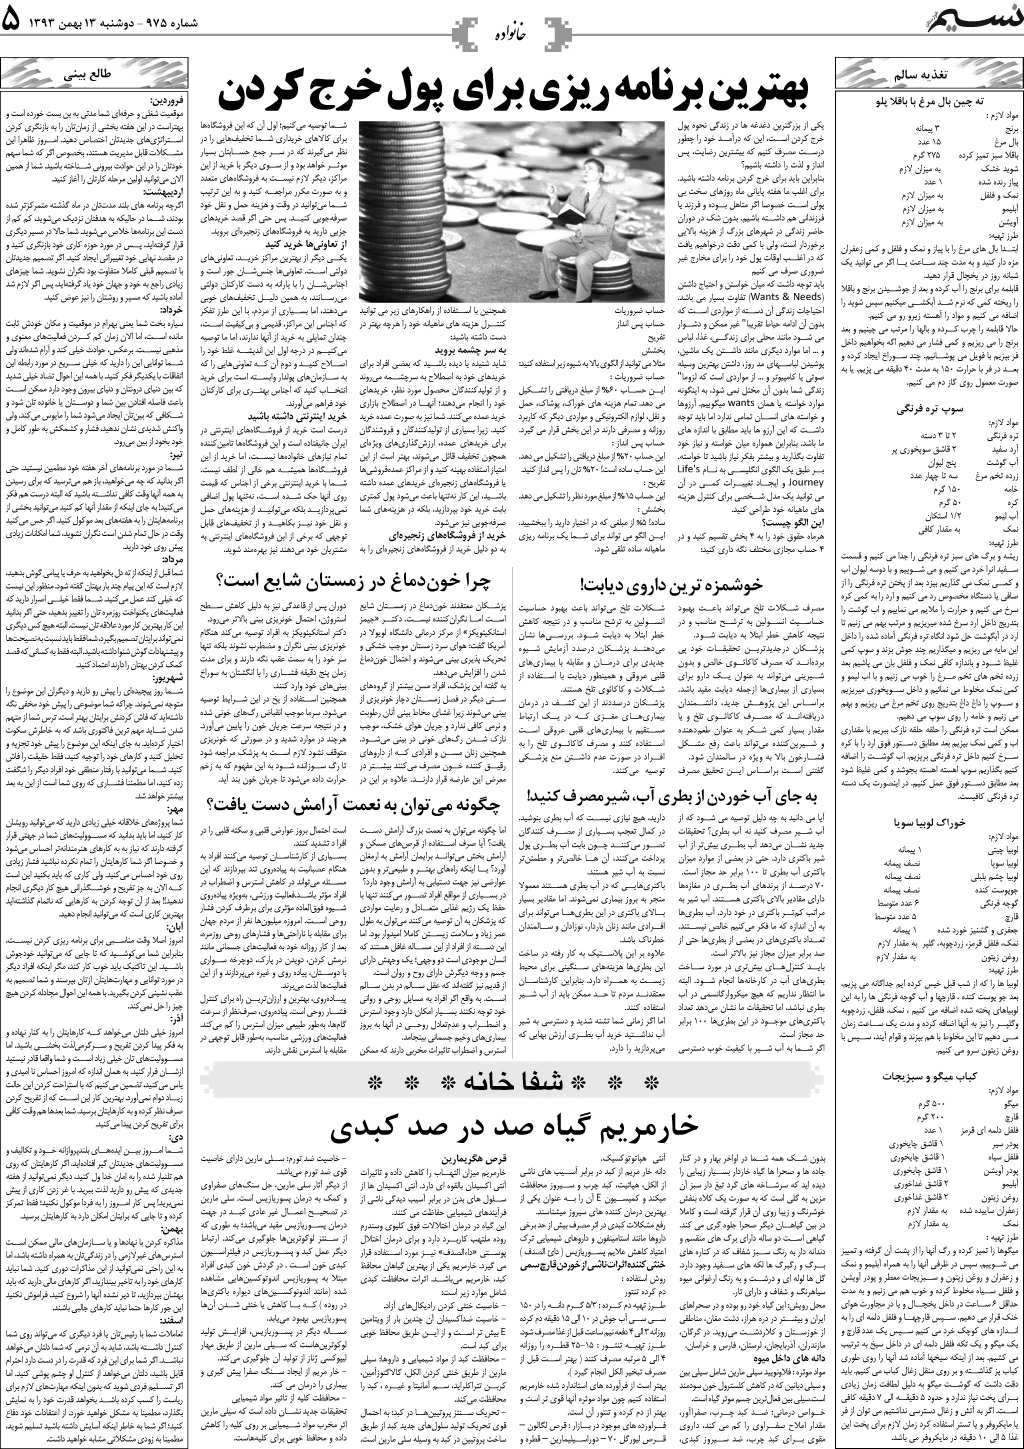 صفحه خانواده روزنامه نسیم شماره 975